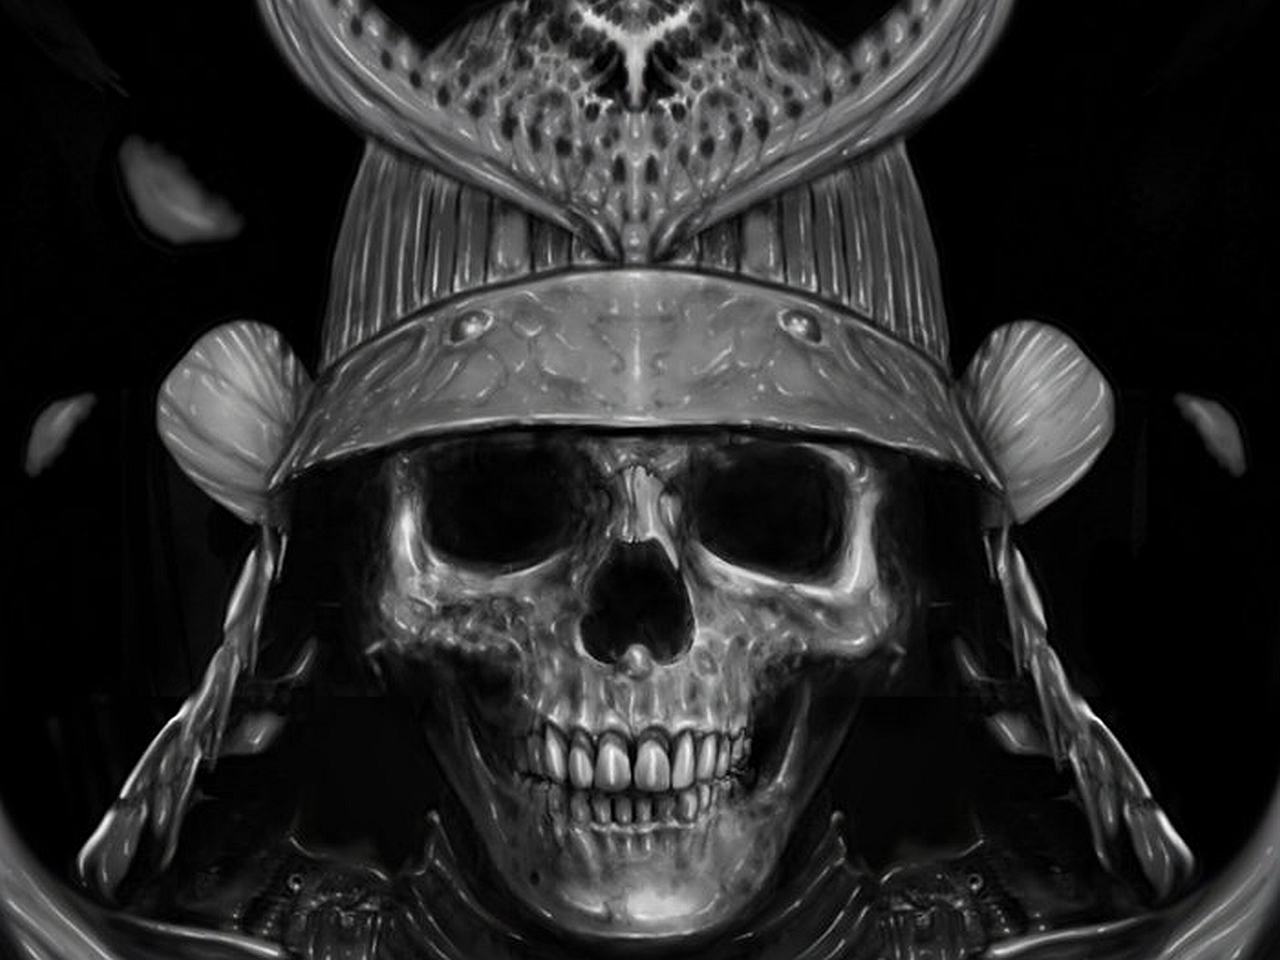 totenkopf wallpaper,cráneo,hueso,fotografía de naturaleza muerta,fotografía monocroma,en blanco y negro